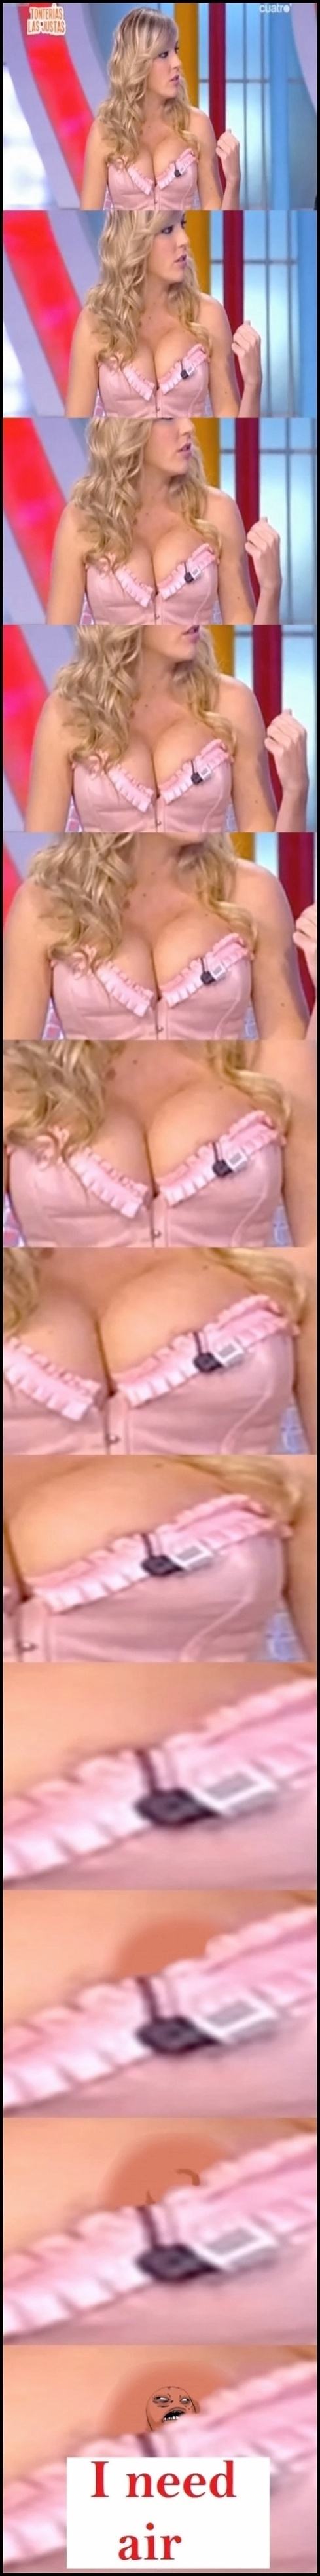 Obrázek -First nipple problems-      12.12.2012